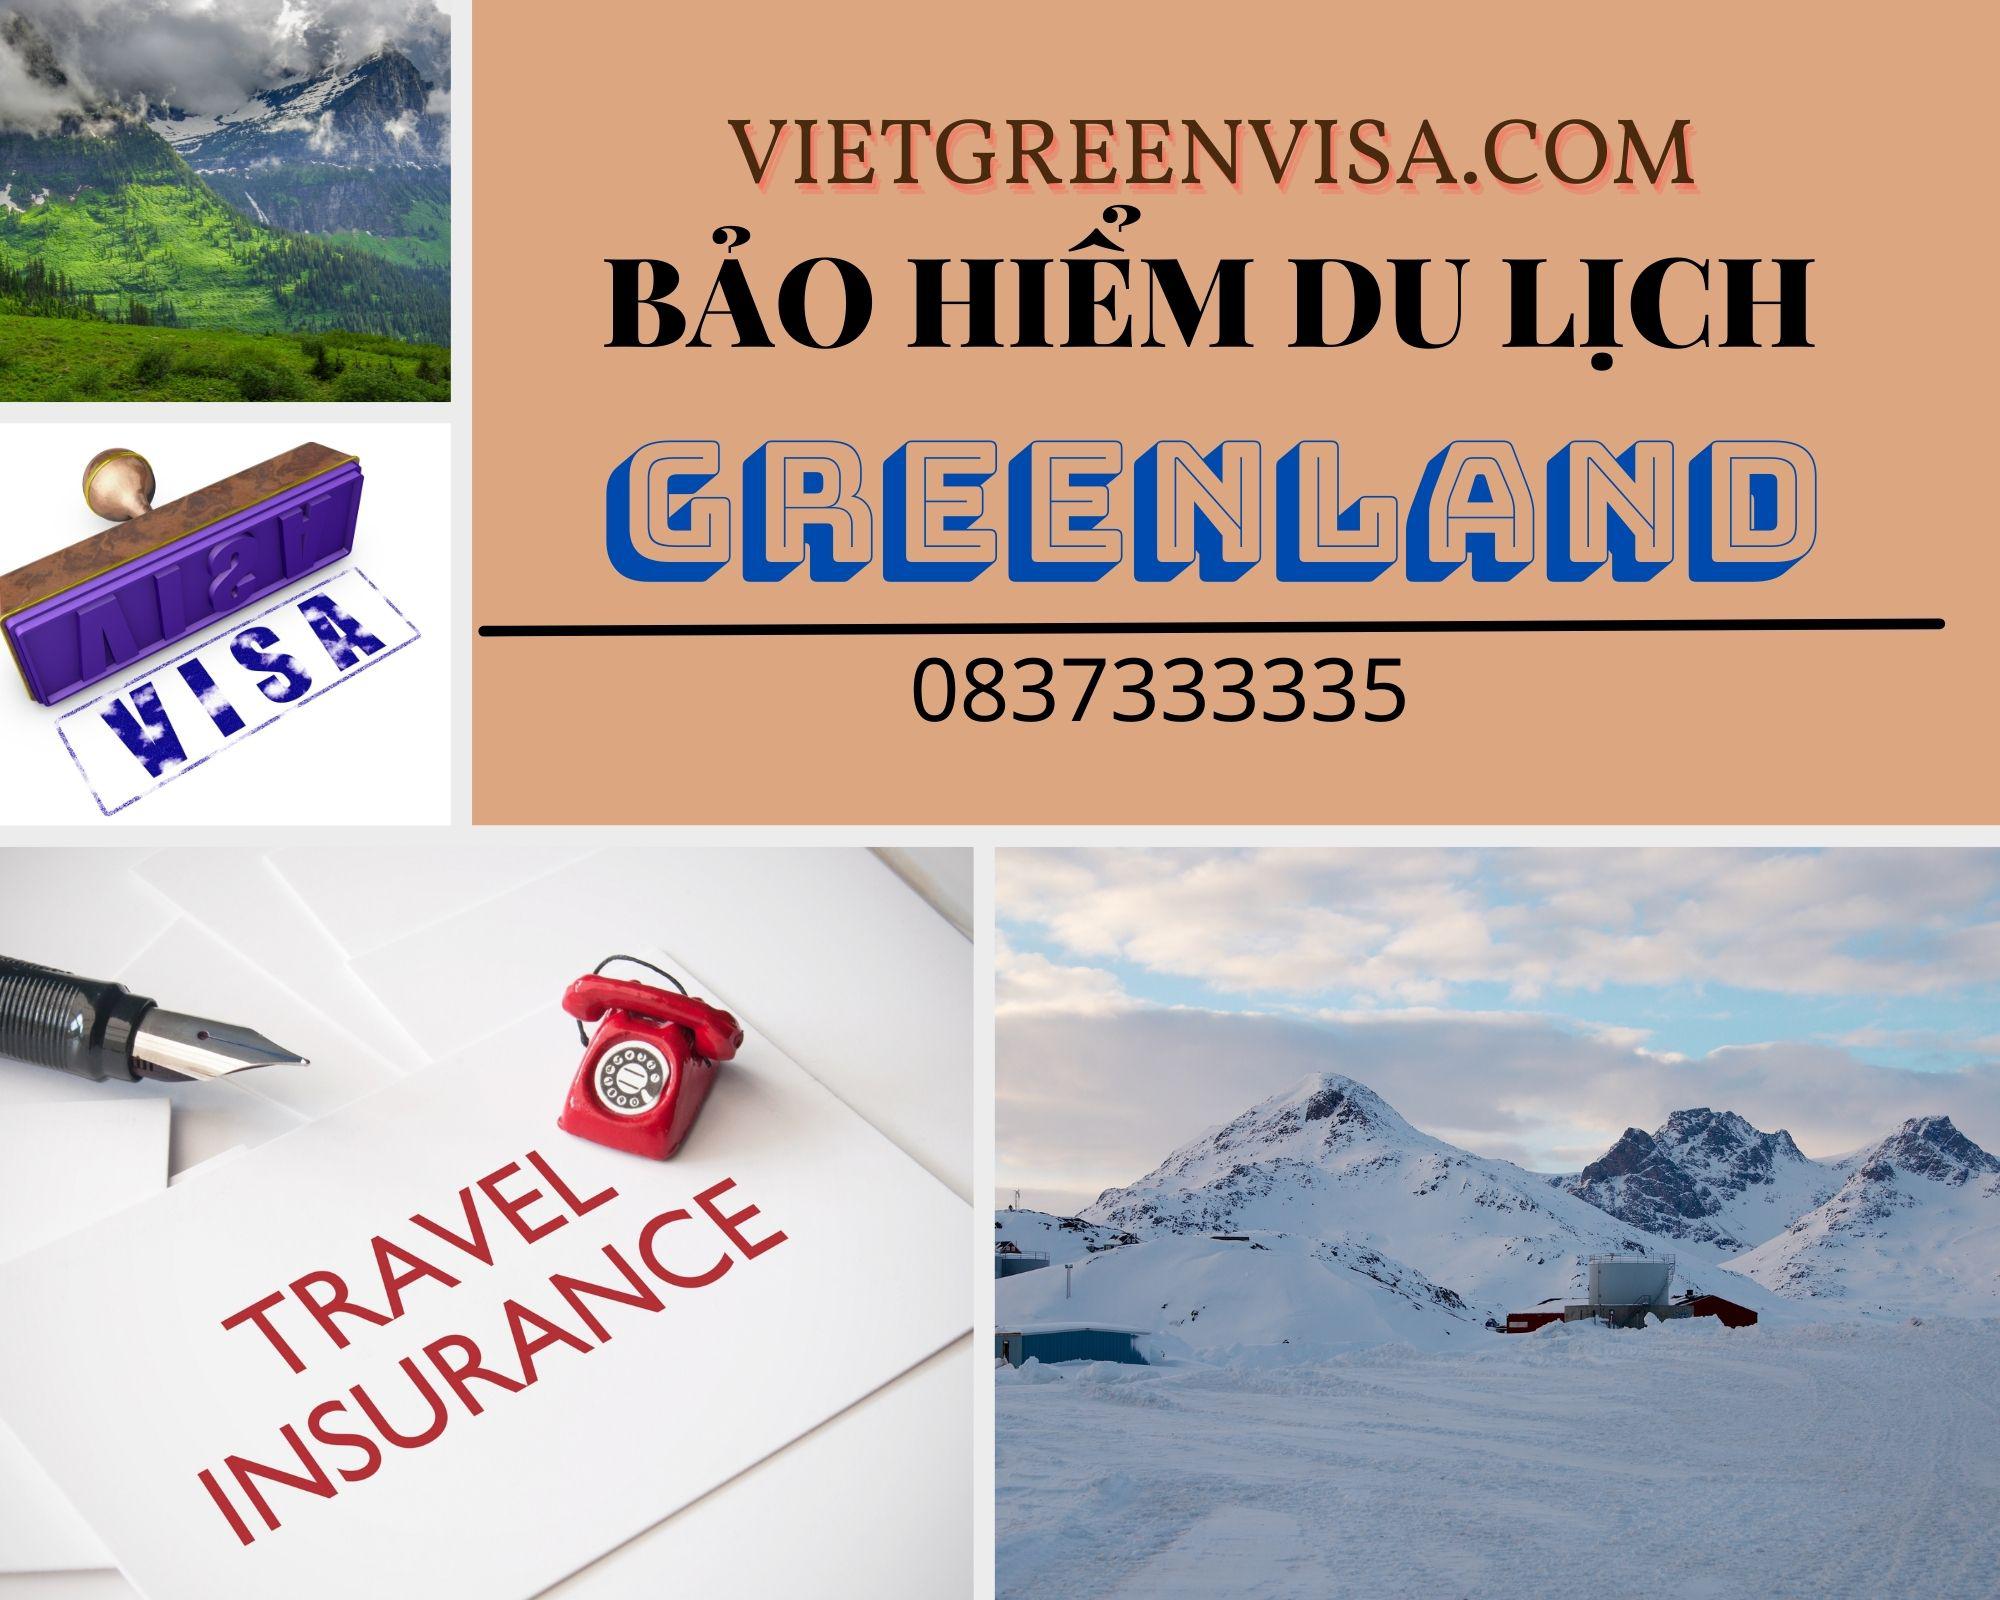 Dịch vụ bảo hiểm du lịch xin visa Greenland giá tốt